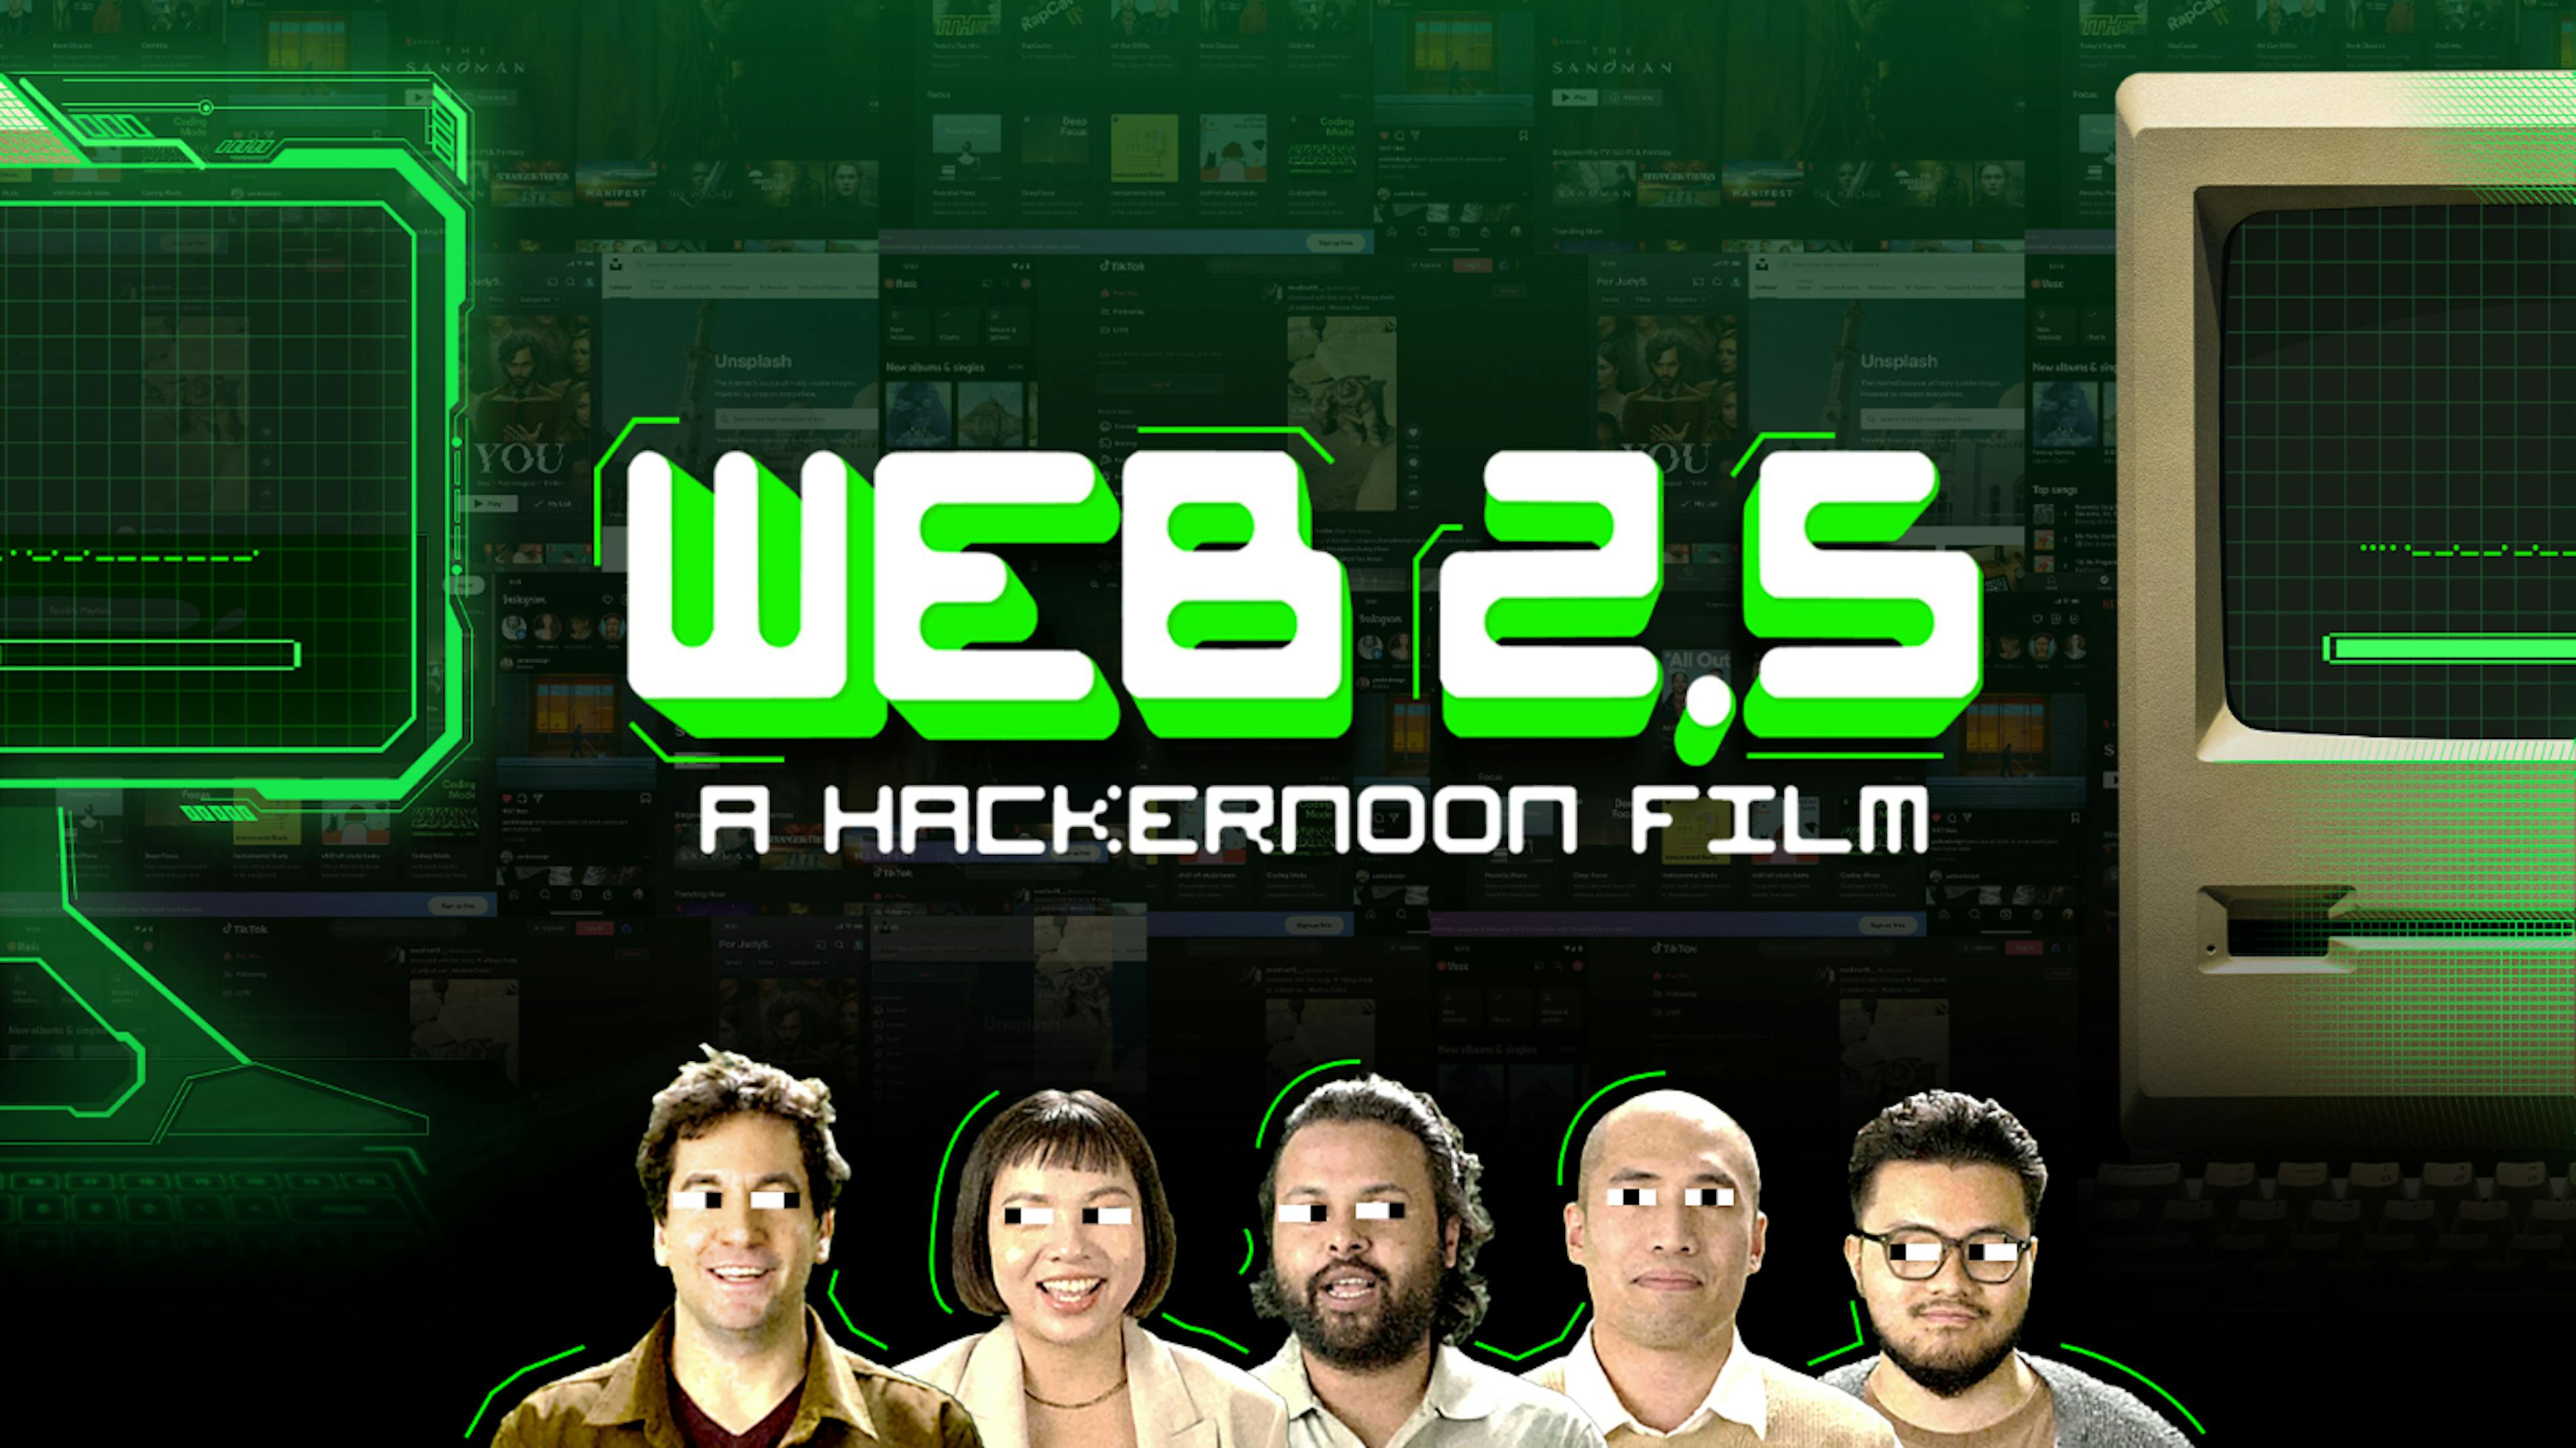 featured image - Santo 🎅 O documentário Web 2.5 do HackerNoon foi lançado! 😮